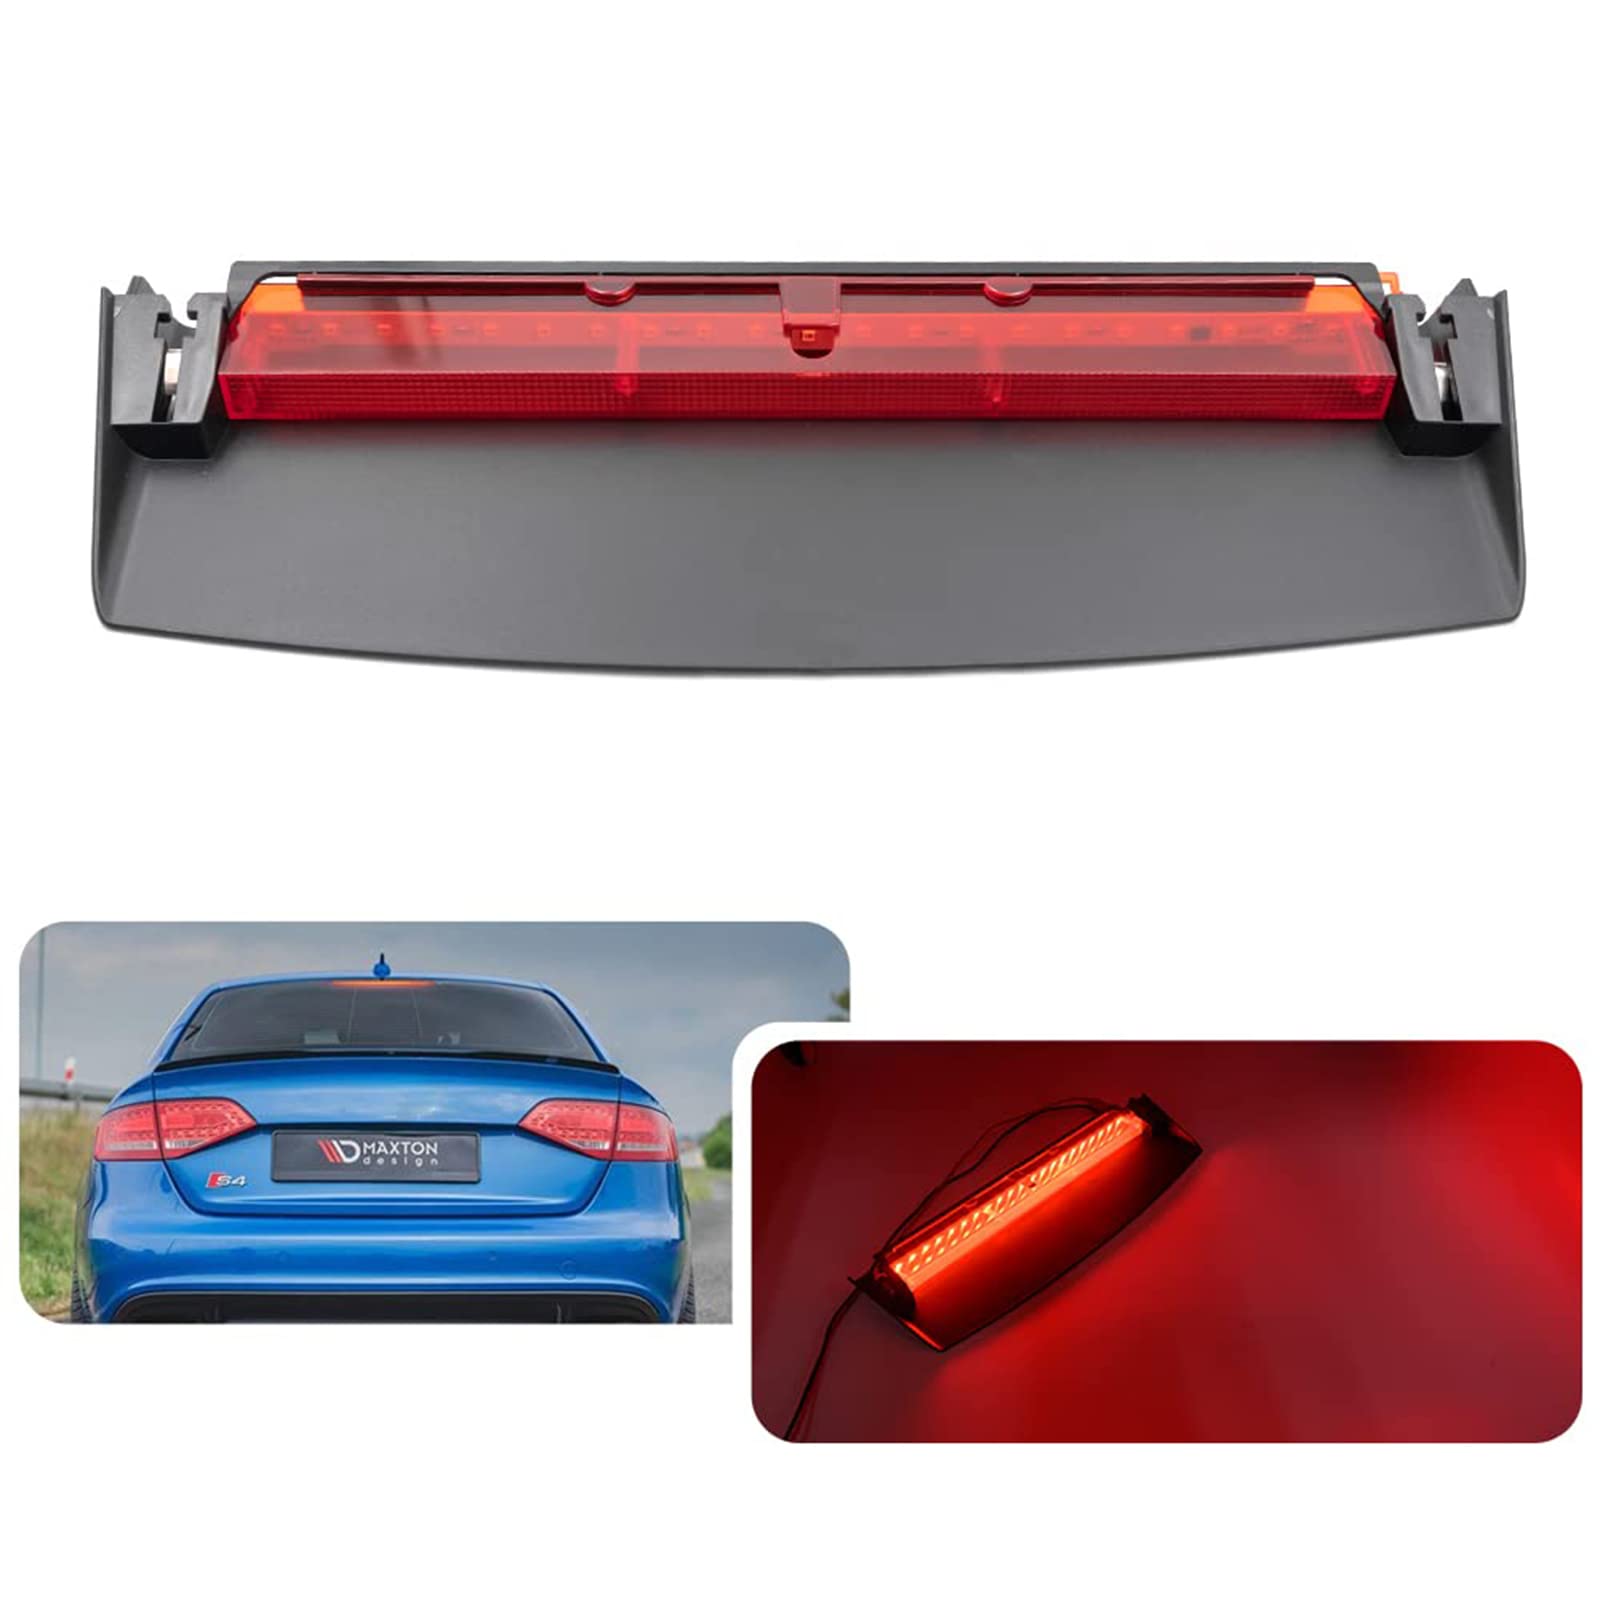 njssjd 1 x rote Linse LED 3. Bremsleuchte hohe Montage Bremslicht für A-udi B8 A4 S4 Limousine 2008-2016 hinten High Level Zusatzbremsrücklicht von njssjd